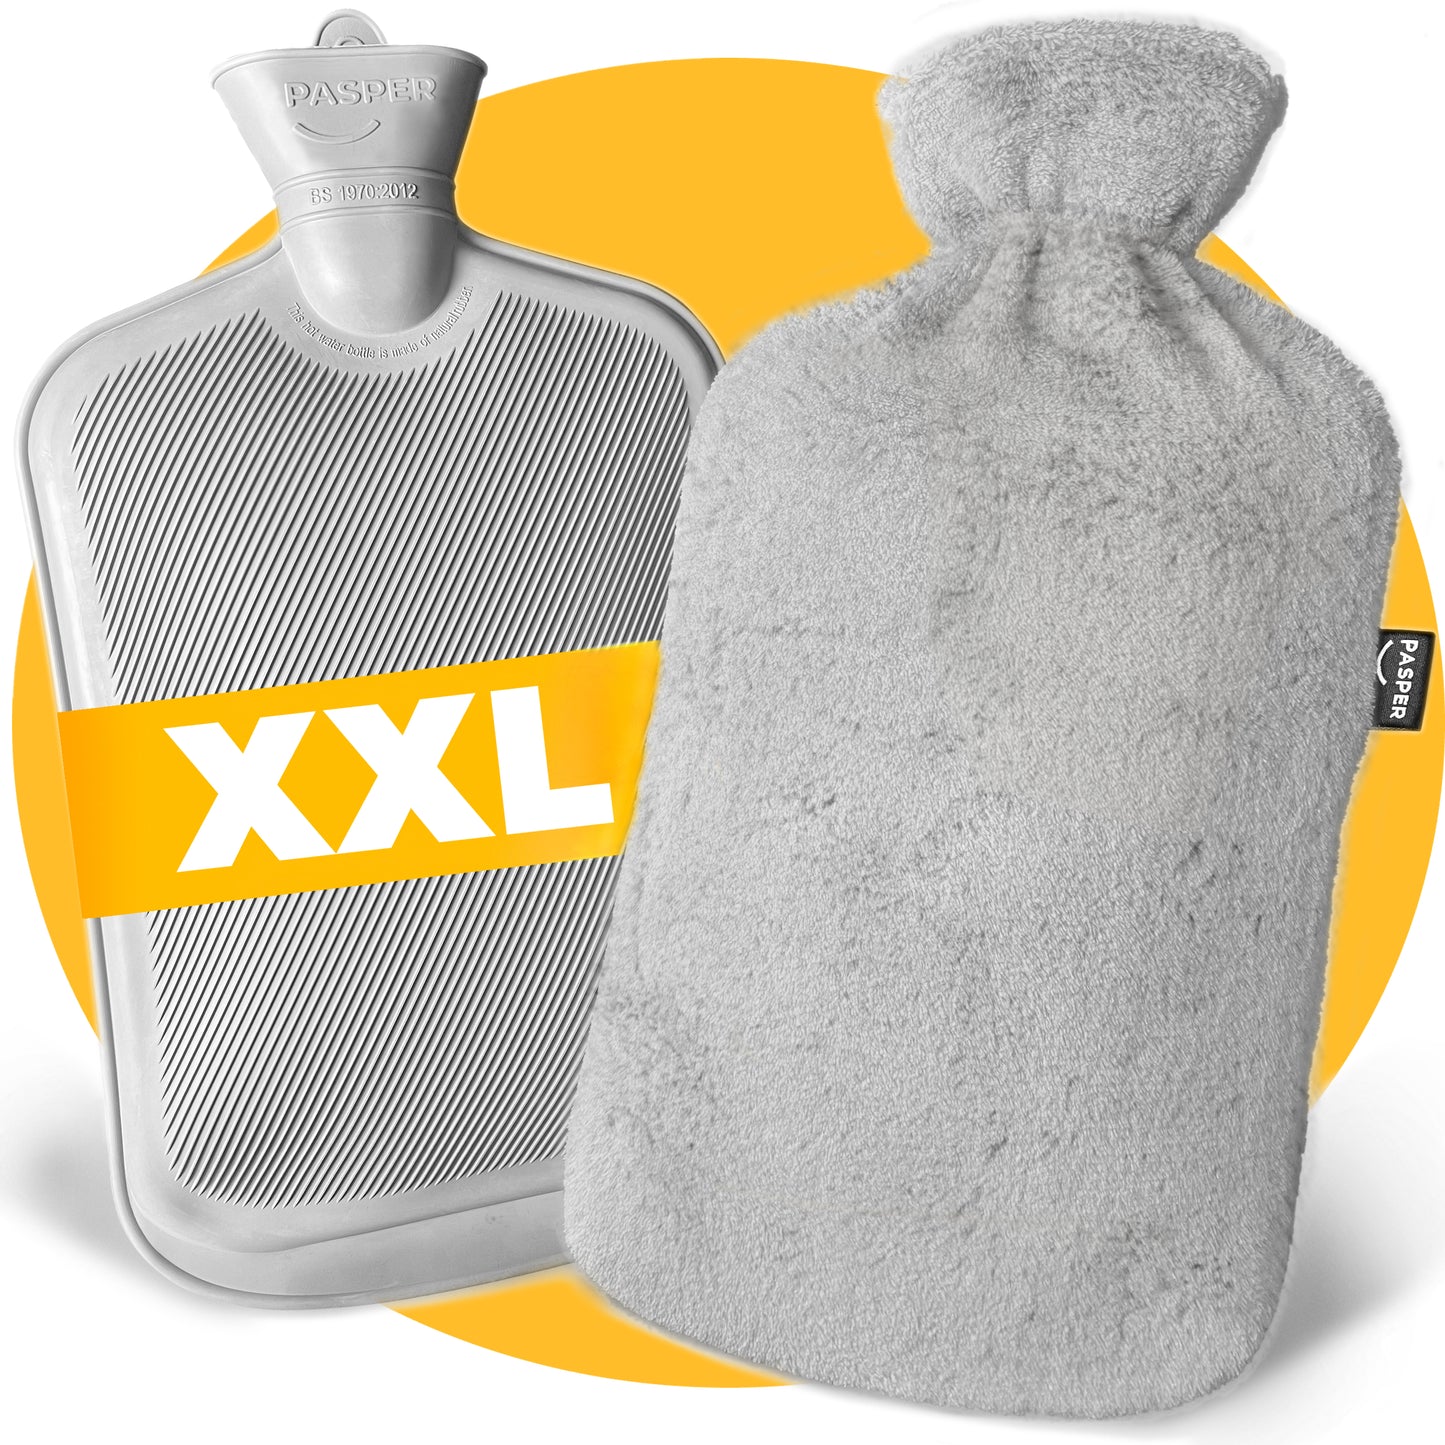 XXL kruik 3,5 liter met hoes - extra grote warmwaterkruik